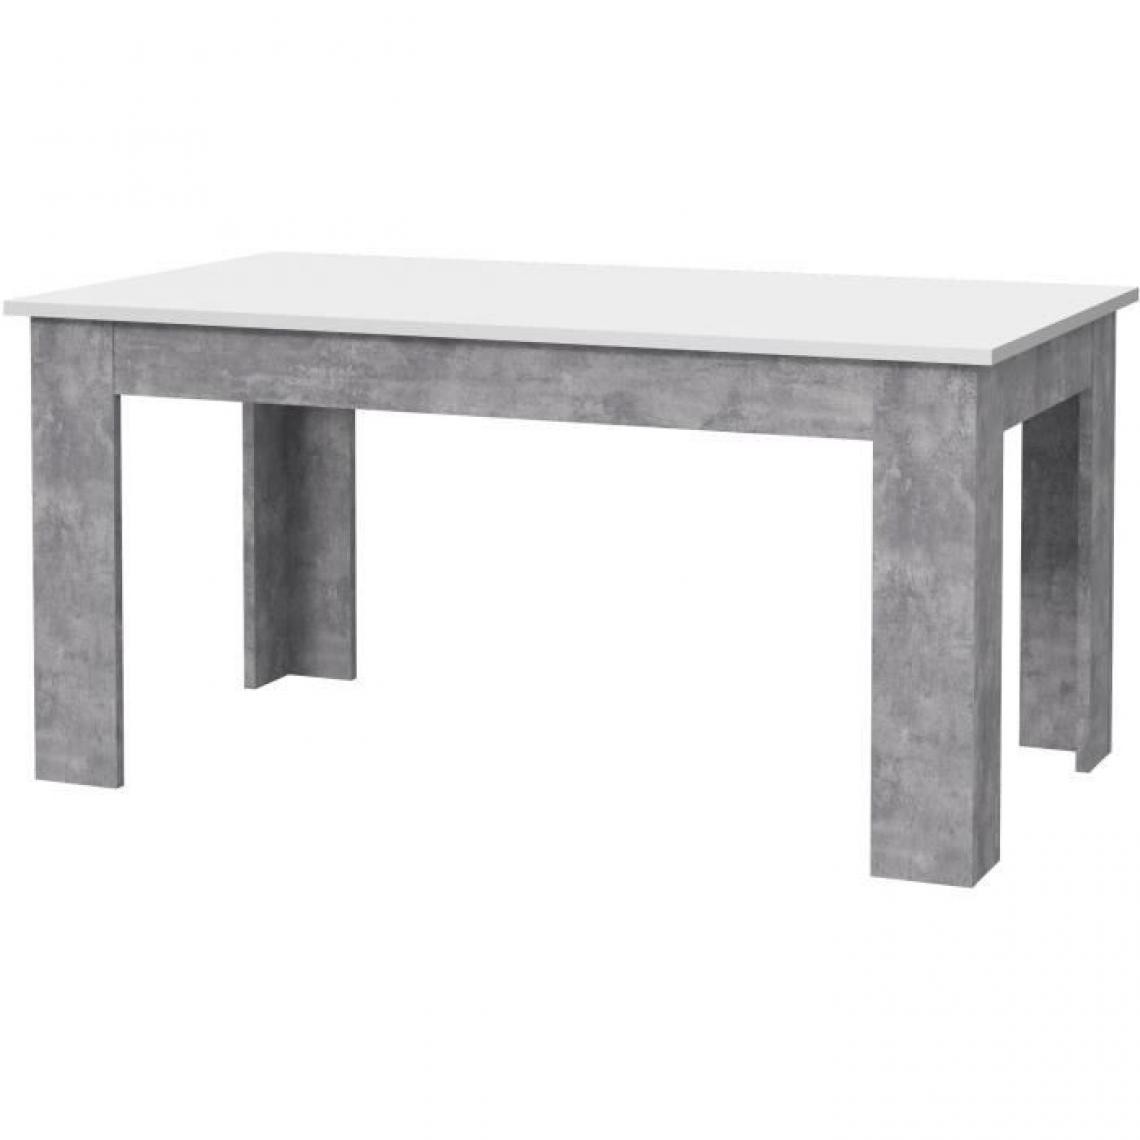 Cstore - Table à manger - Blanc et béton gris clair - PILVIL - 160 x I90 x H 75 cm - Tables à manger